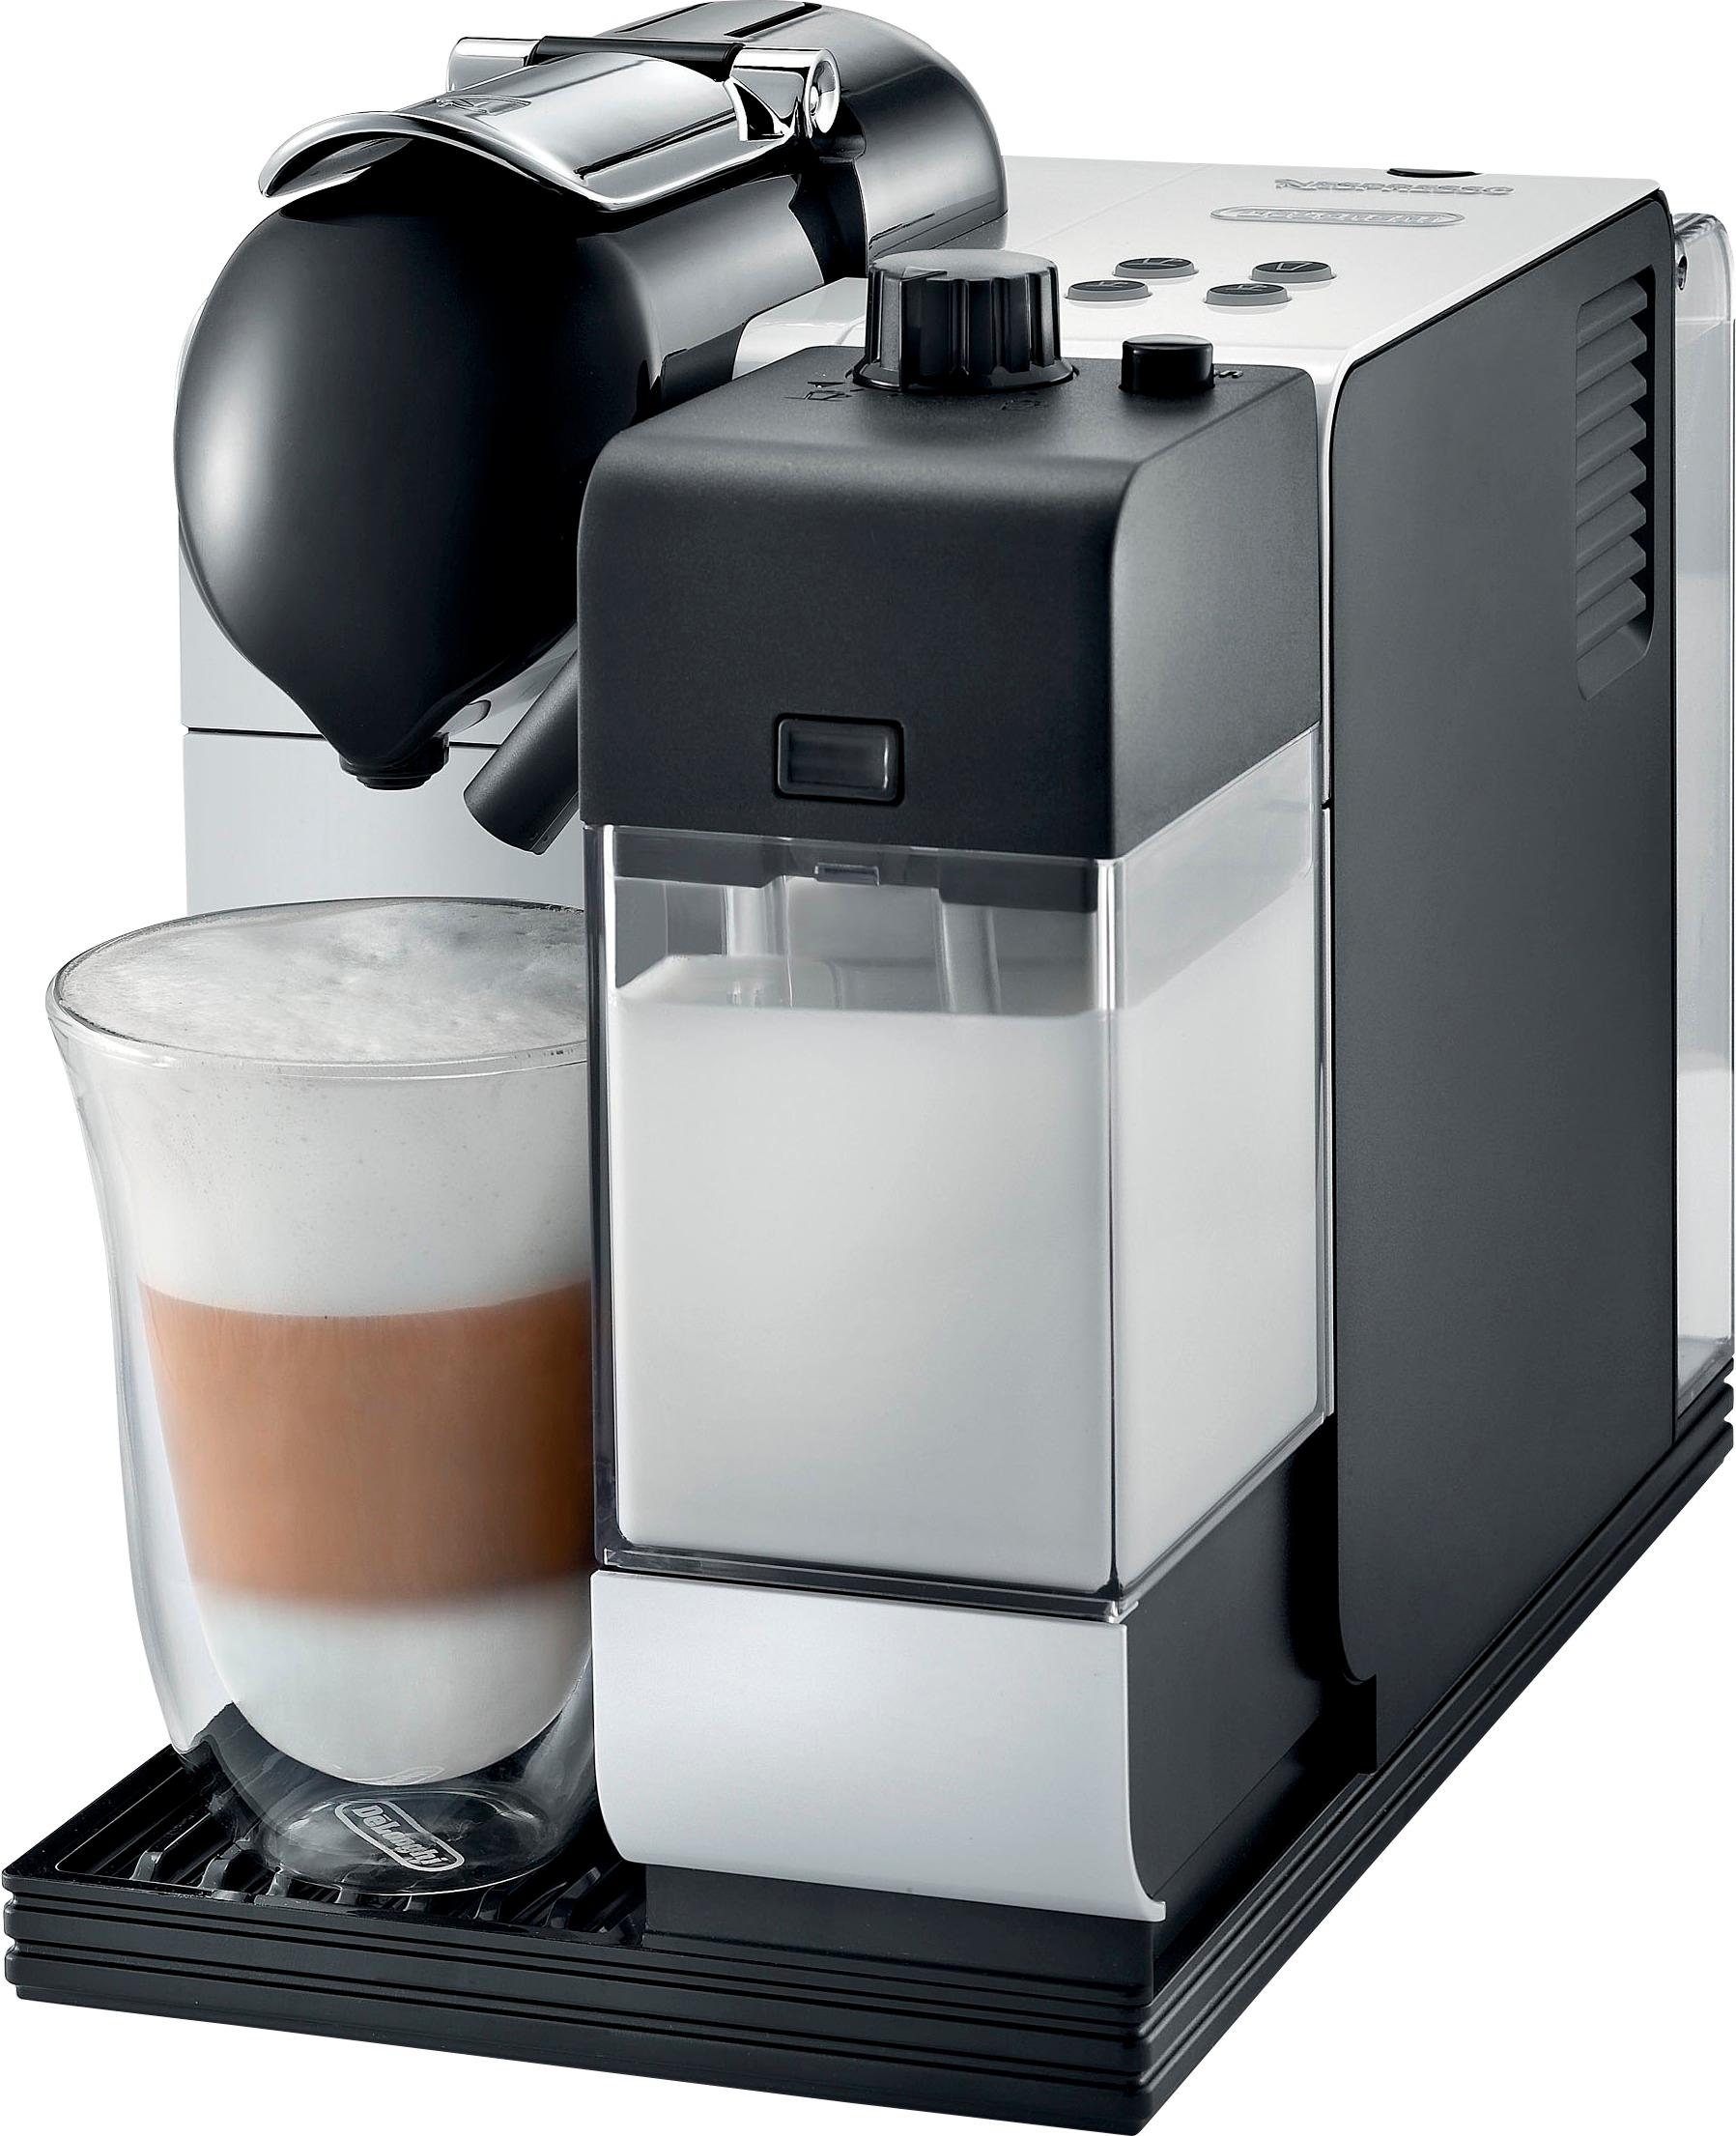 Nespresso White Espresso & Cappuccino Machines for sale